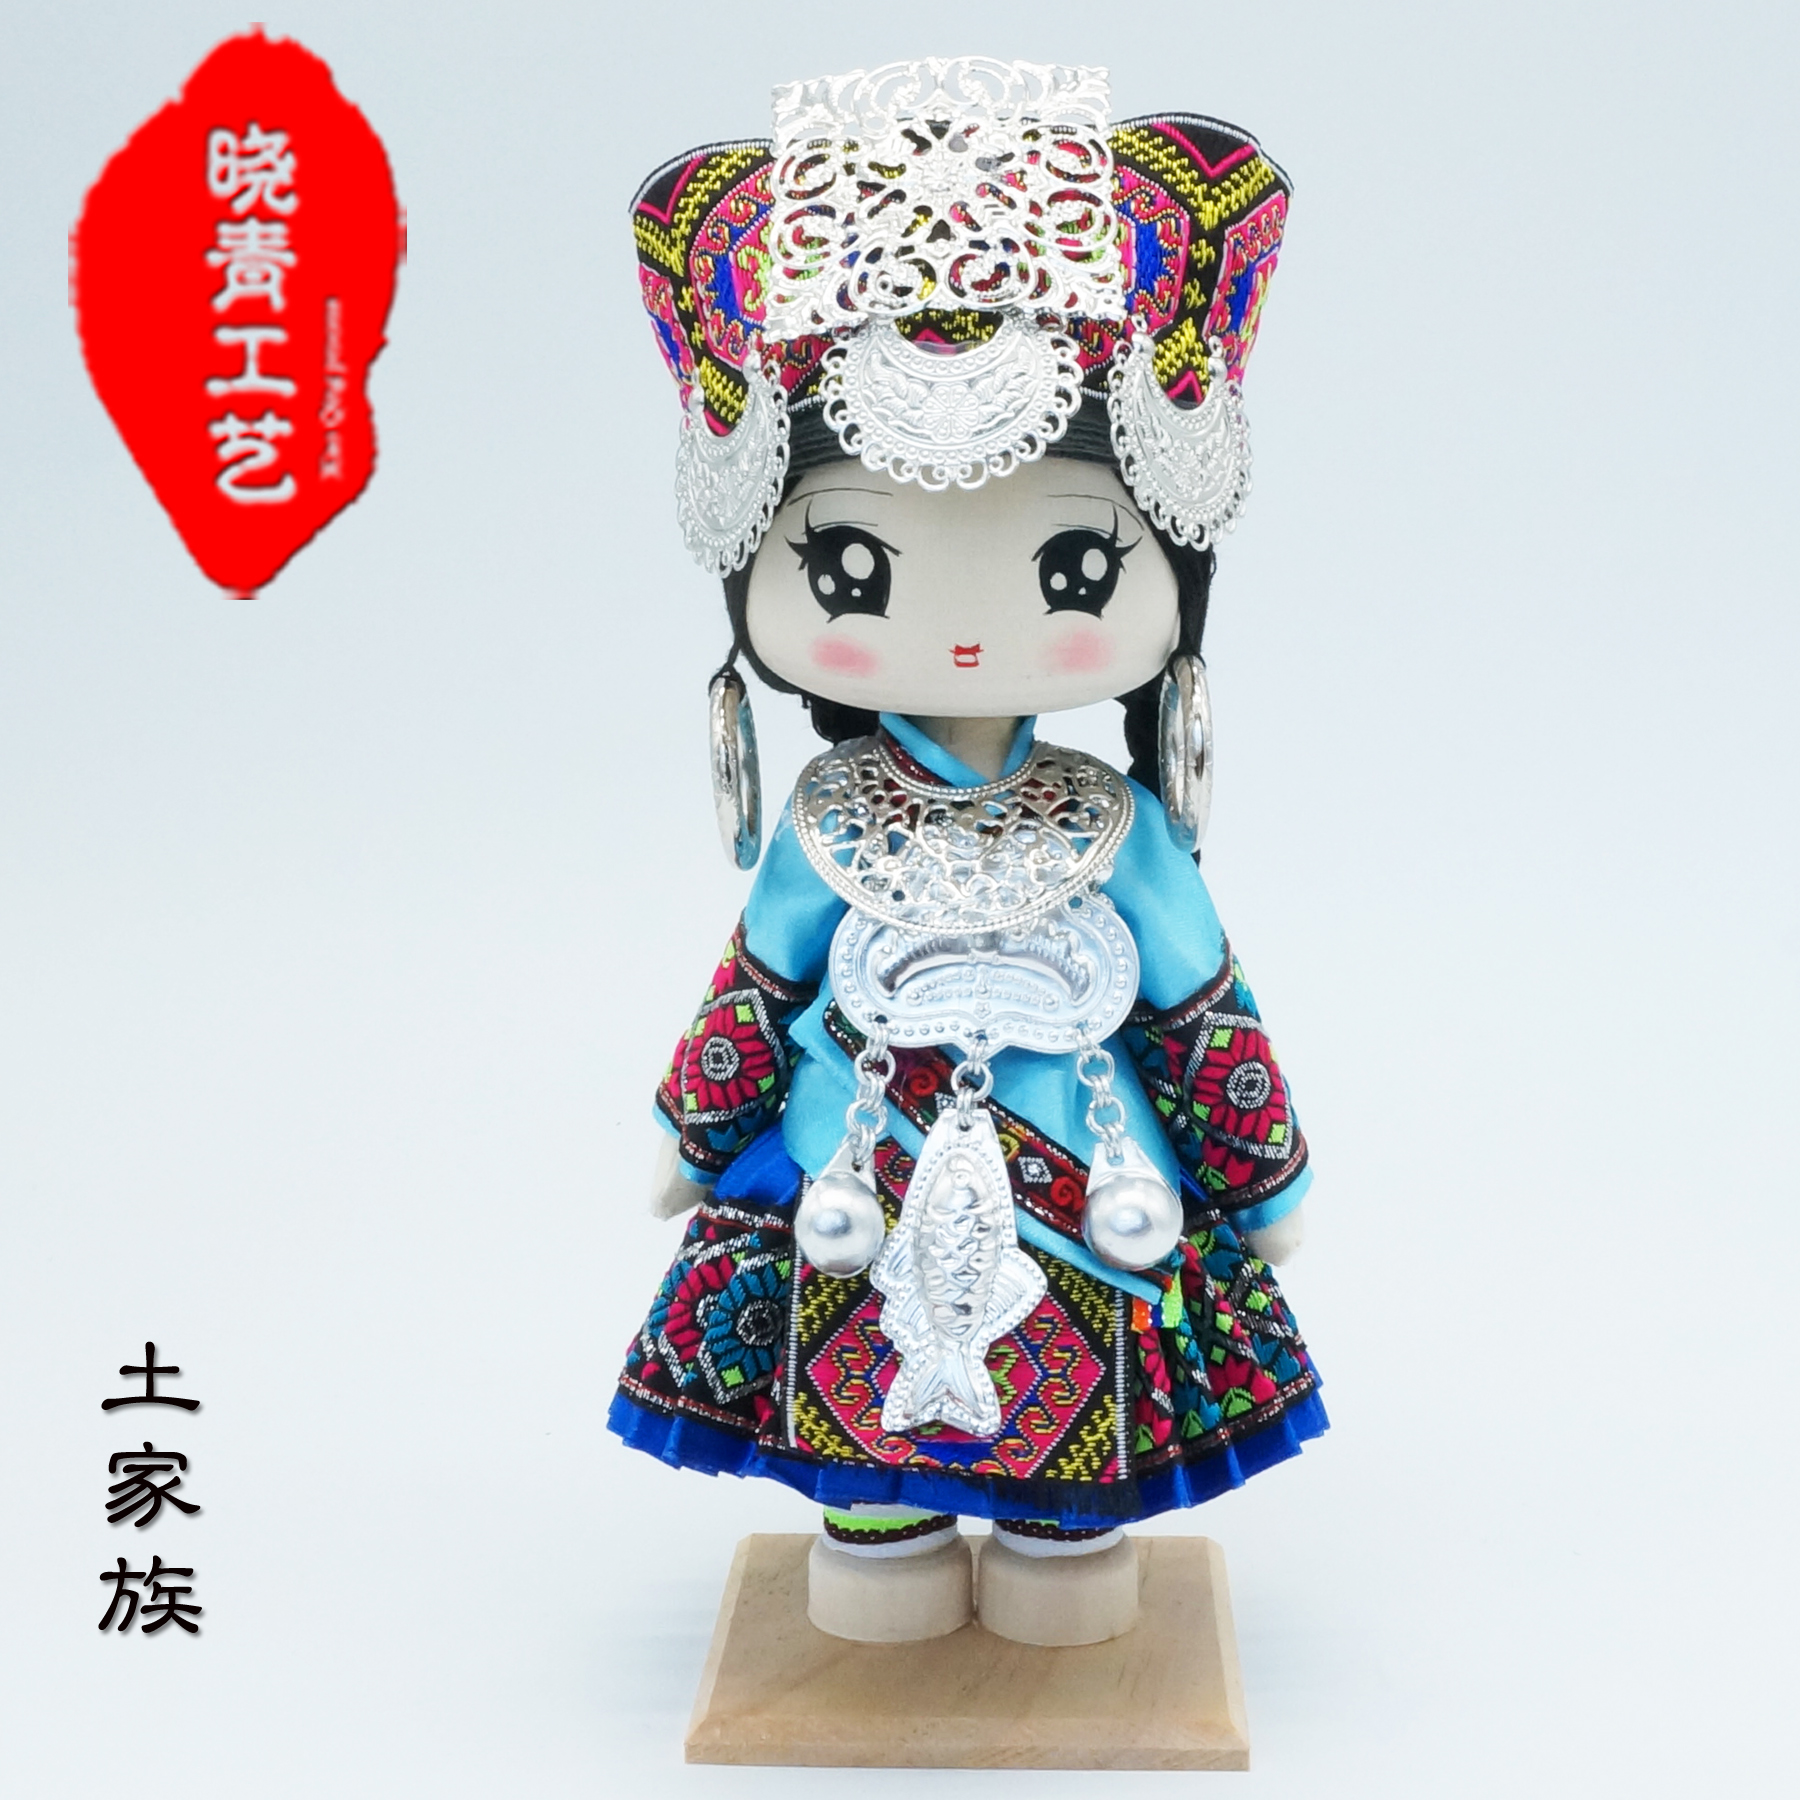 晓青工艺28cm中国民族工艺人偶土家族娃娃 少数民族特色礼品娃娃